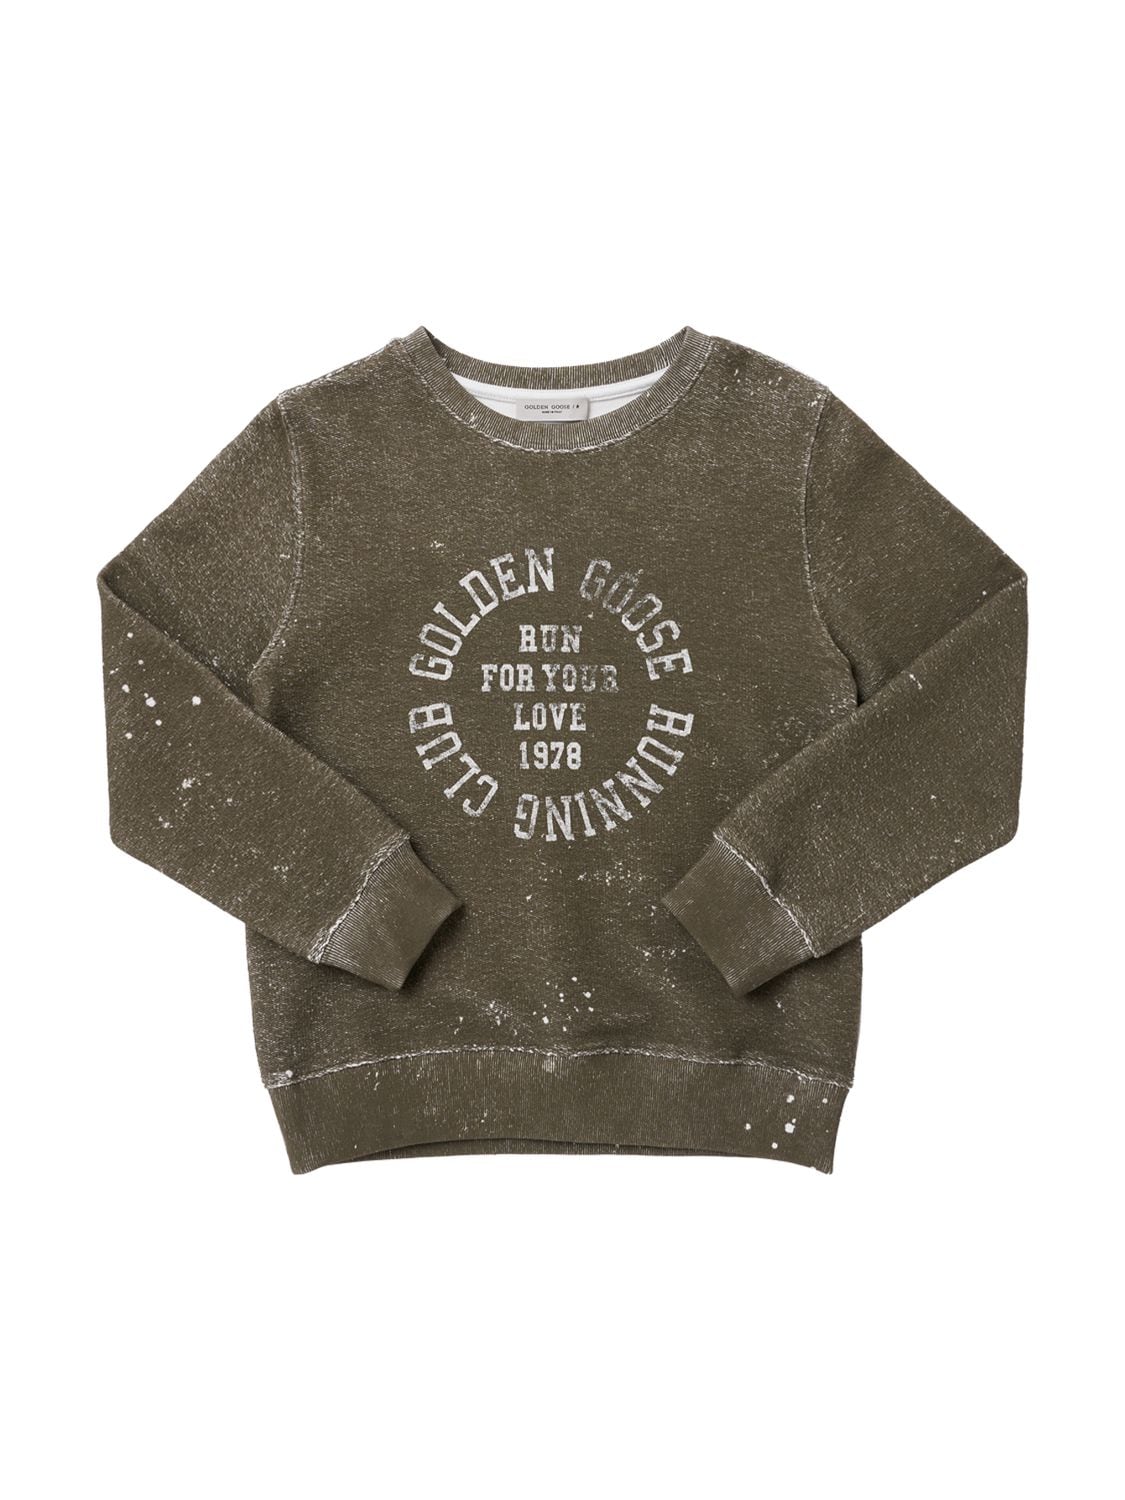 Golden Goose Kids' Printed Cotton Sweatshirt In Olive Green